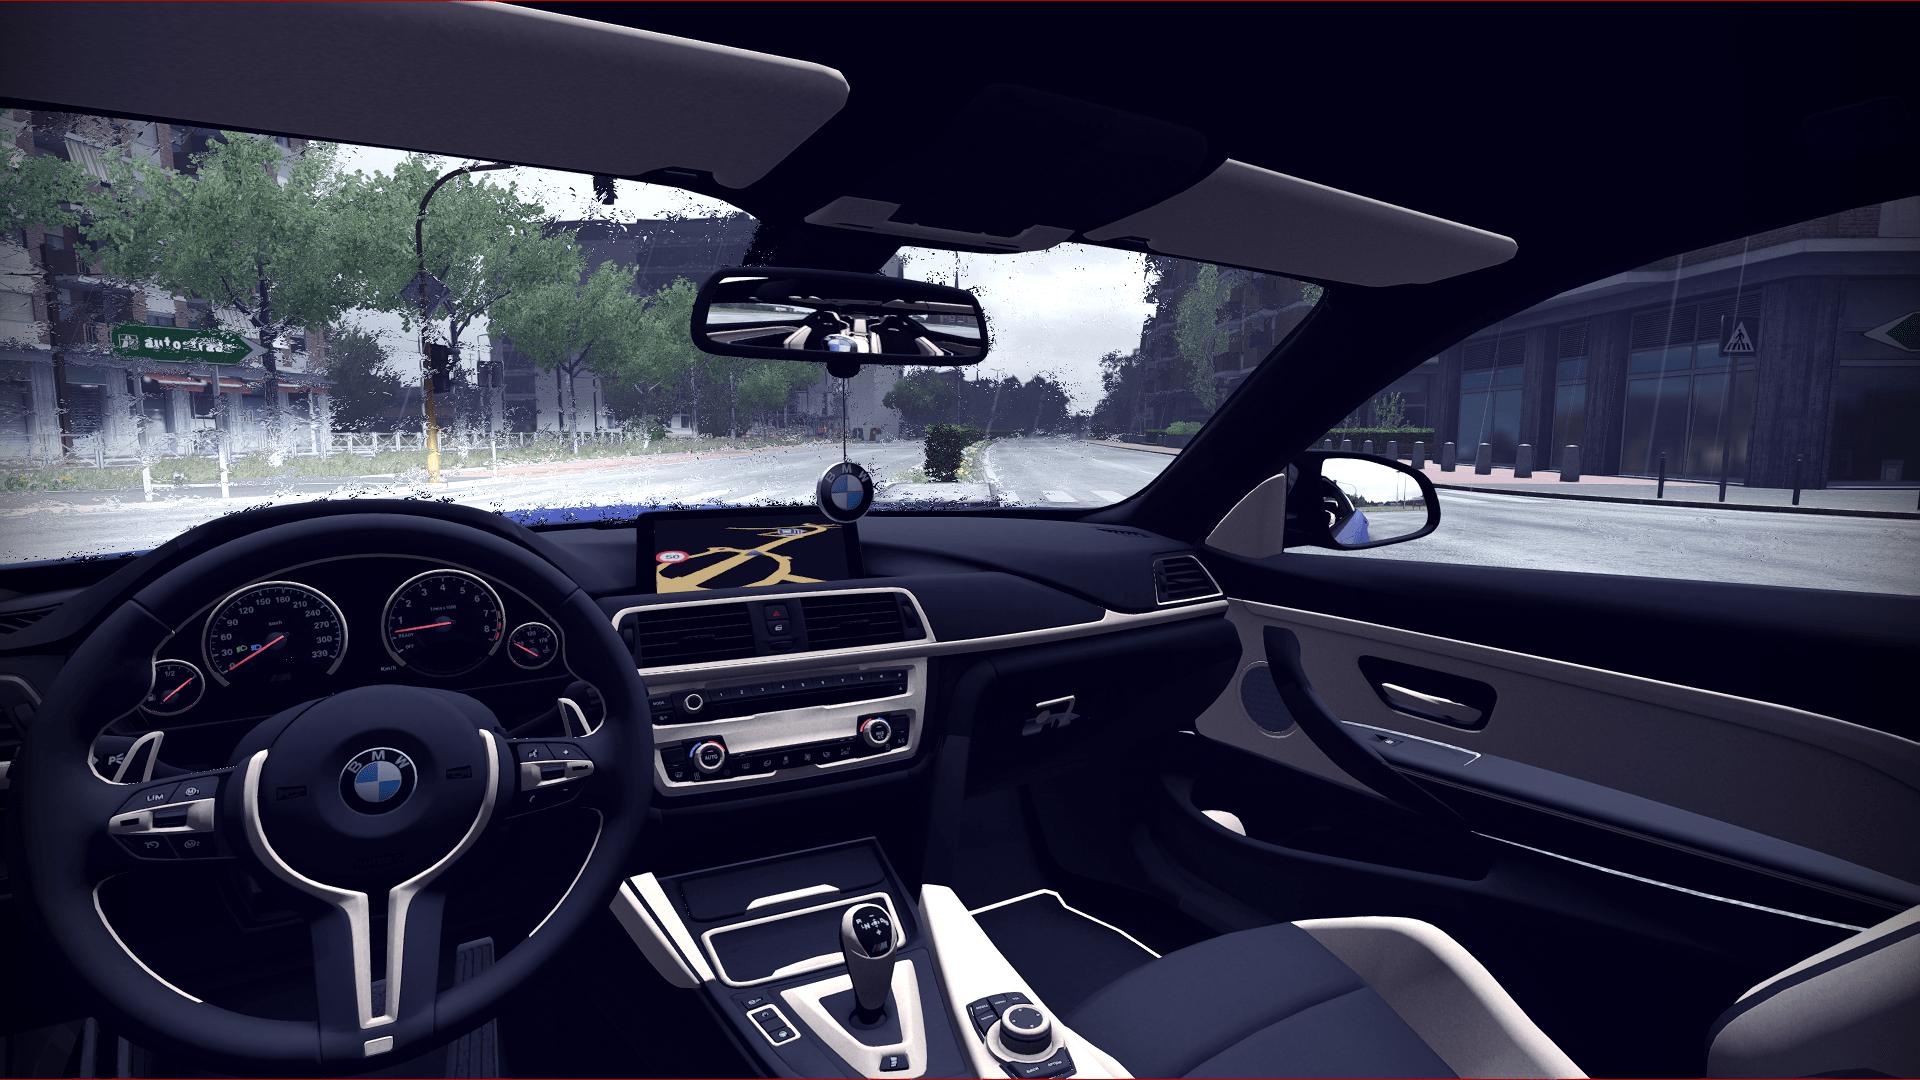 Симулятор автомобиля 2 новая версия моды. BMW m4 car Simulator 2. BMW m8 симулятор автомобиля 2. Car of симулятор машин 2020. Симулятор автомобиля 2 версия 1.46.4.